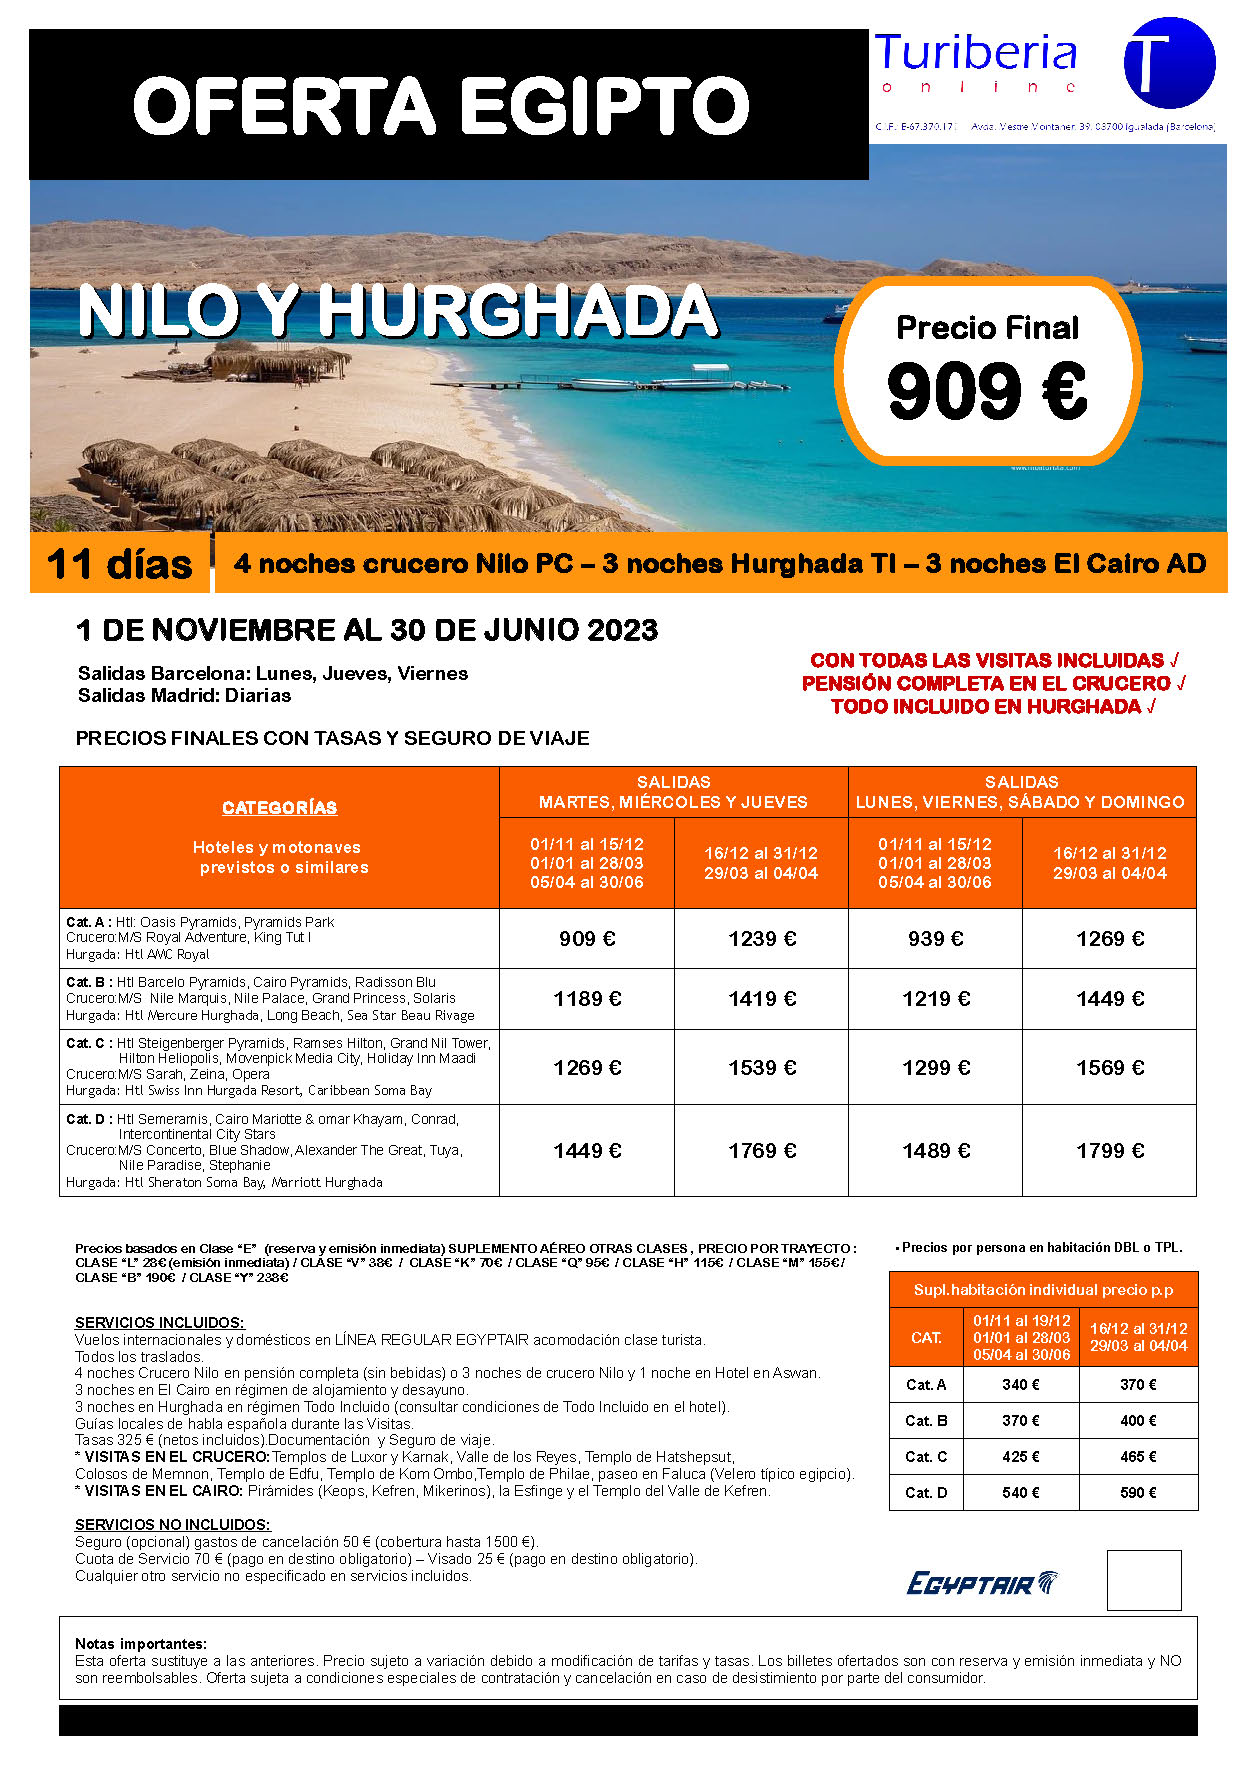 Ofertas Turiberia 2022-2023 Egipto Nilo y Hurgada 11 dias salida en vuelo regular directo desde Madrid